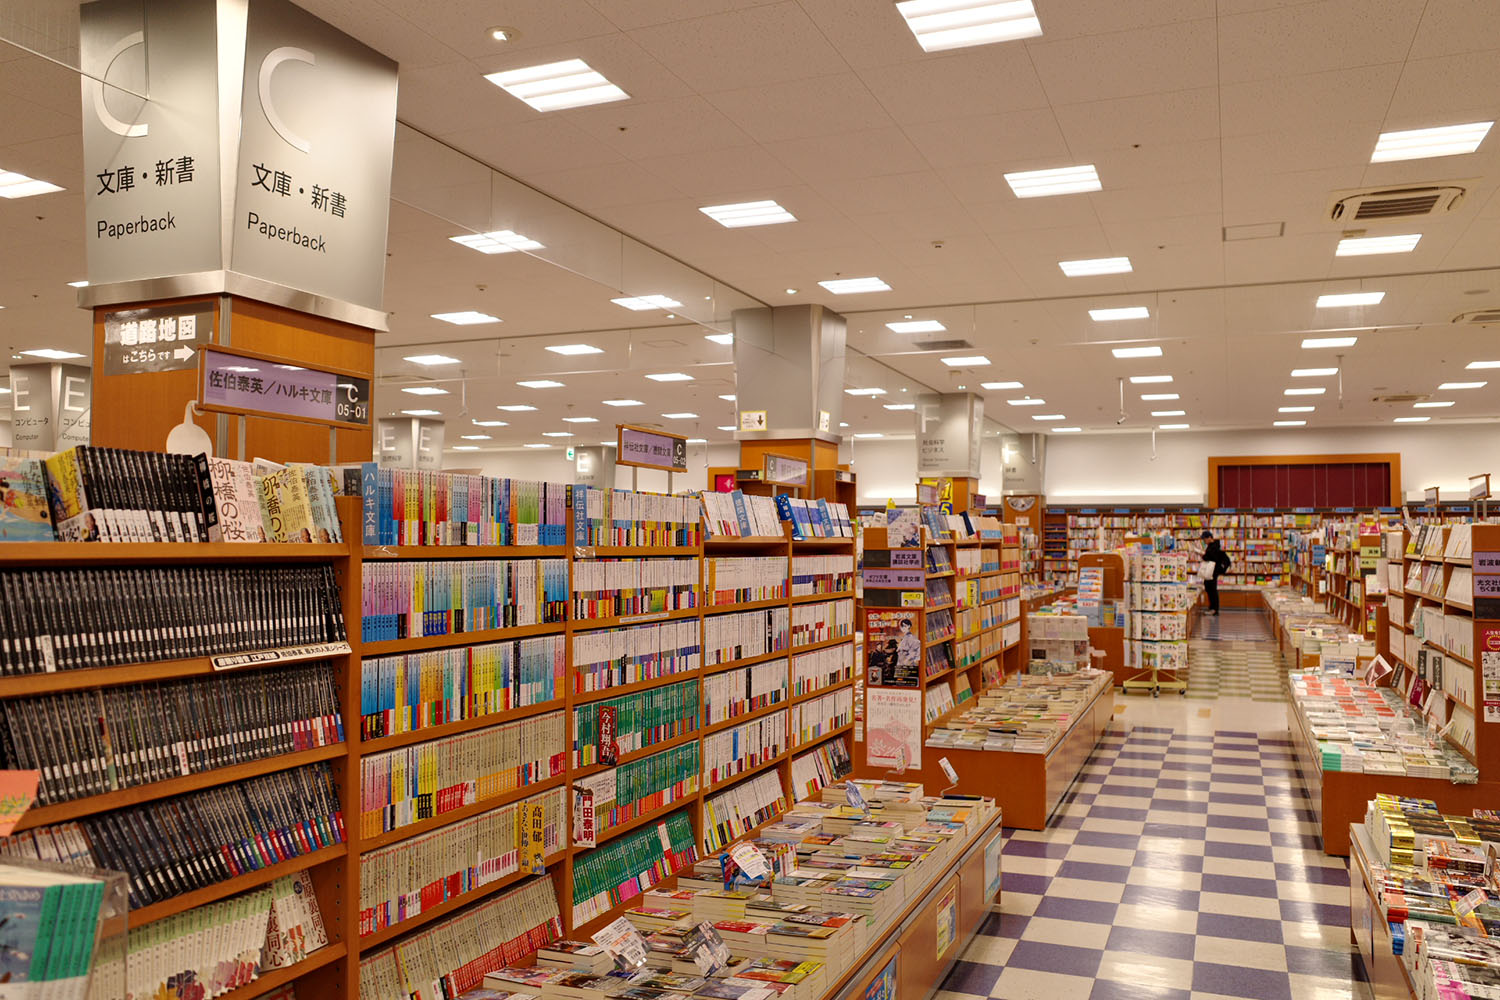 CDとDVD売場も併設されて650坪の空間。通路も広く、ゆったりと本を選ぶことができる。